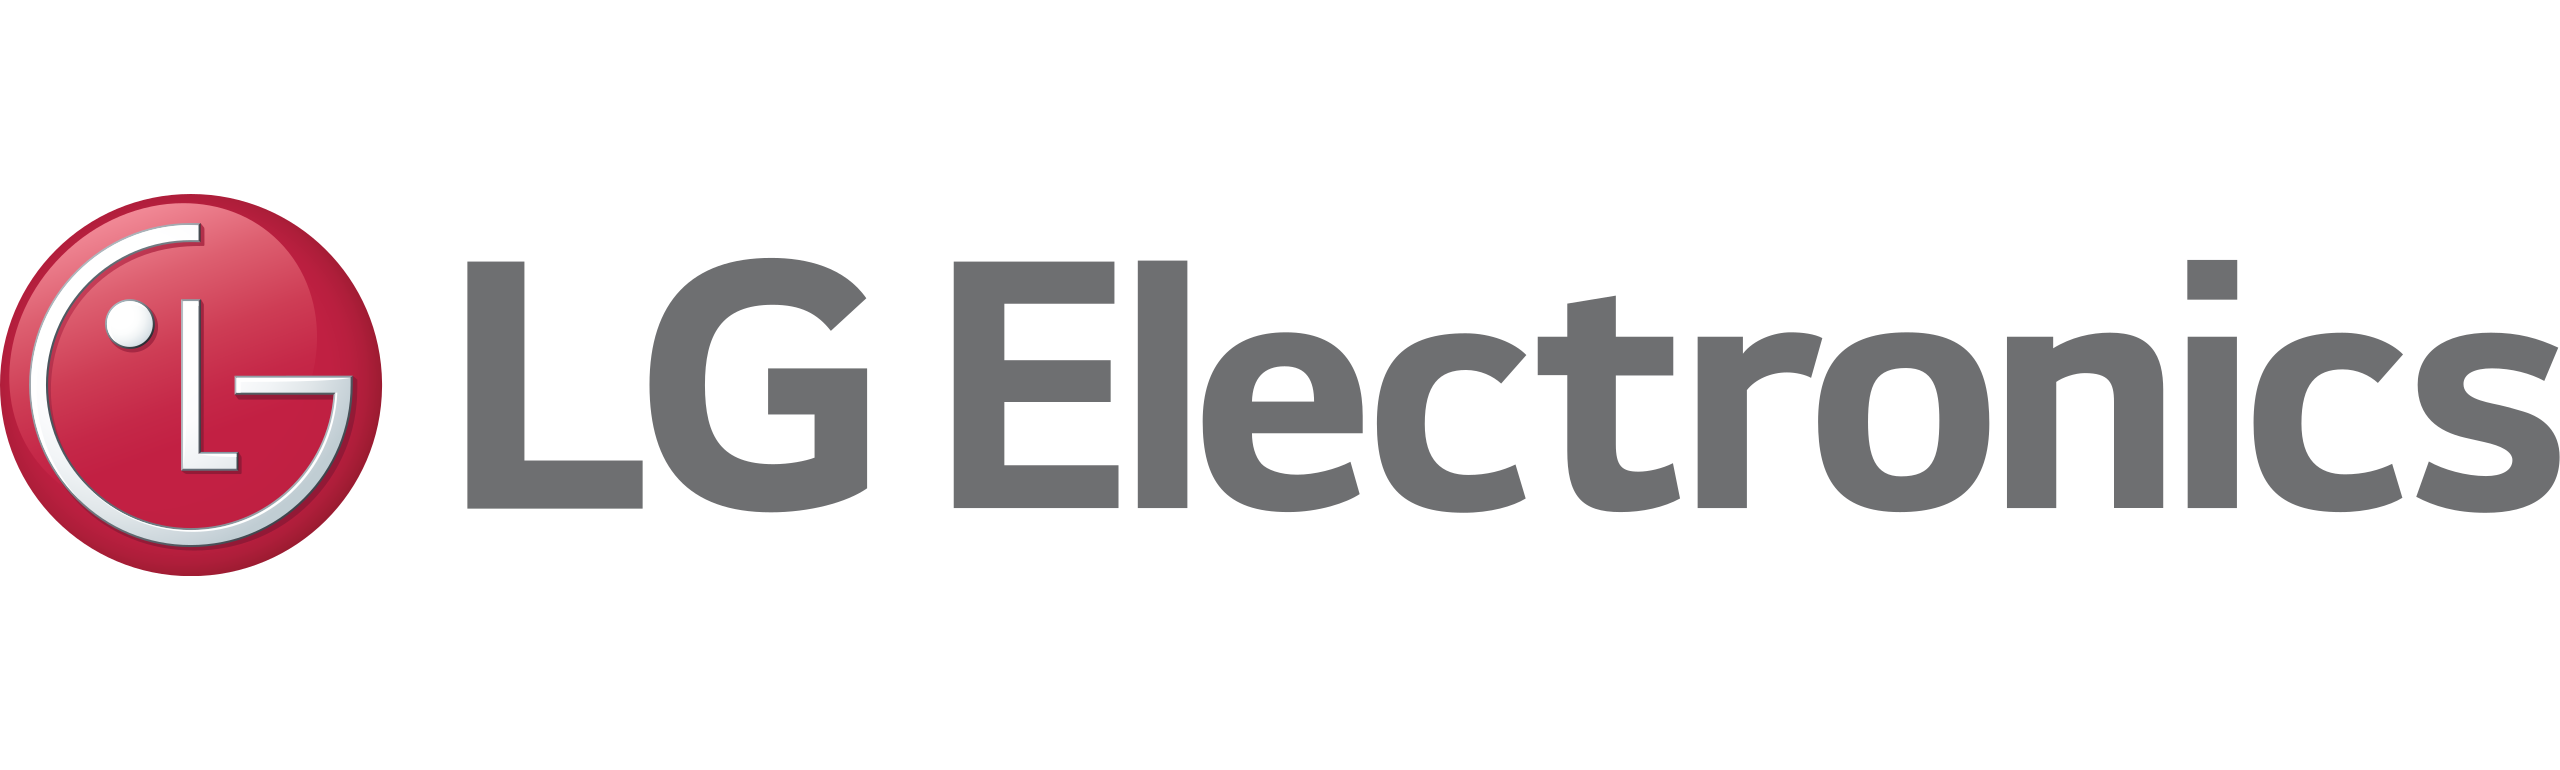 LG_Electronics_logo